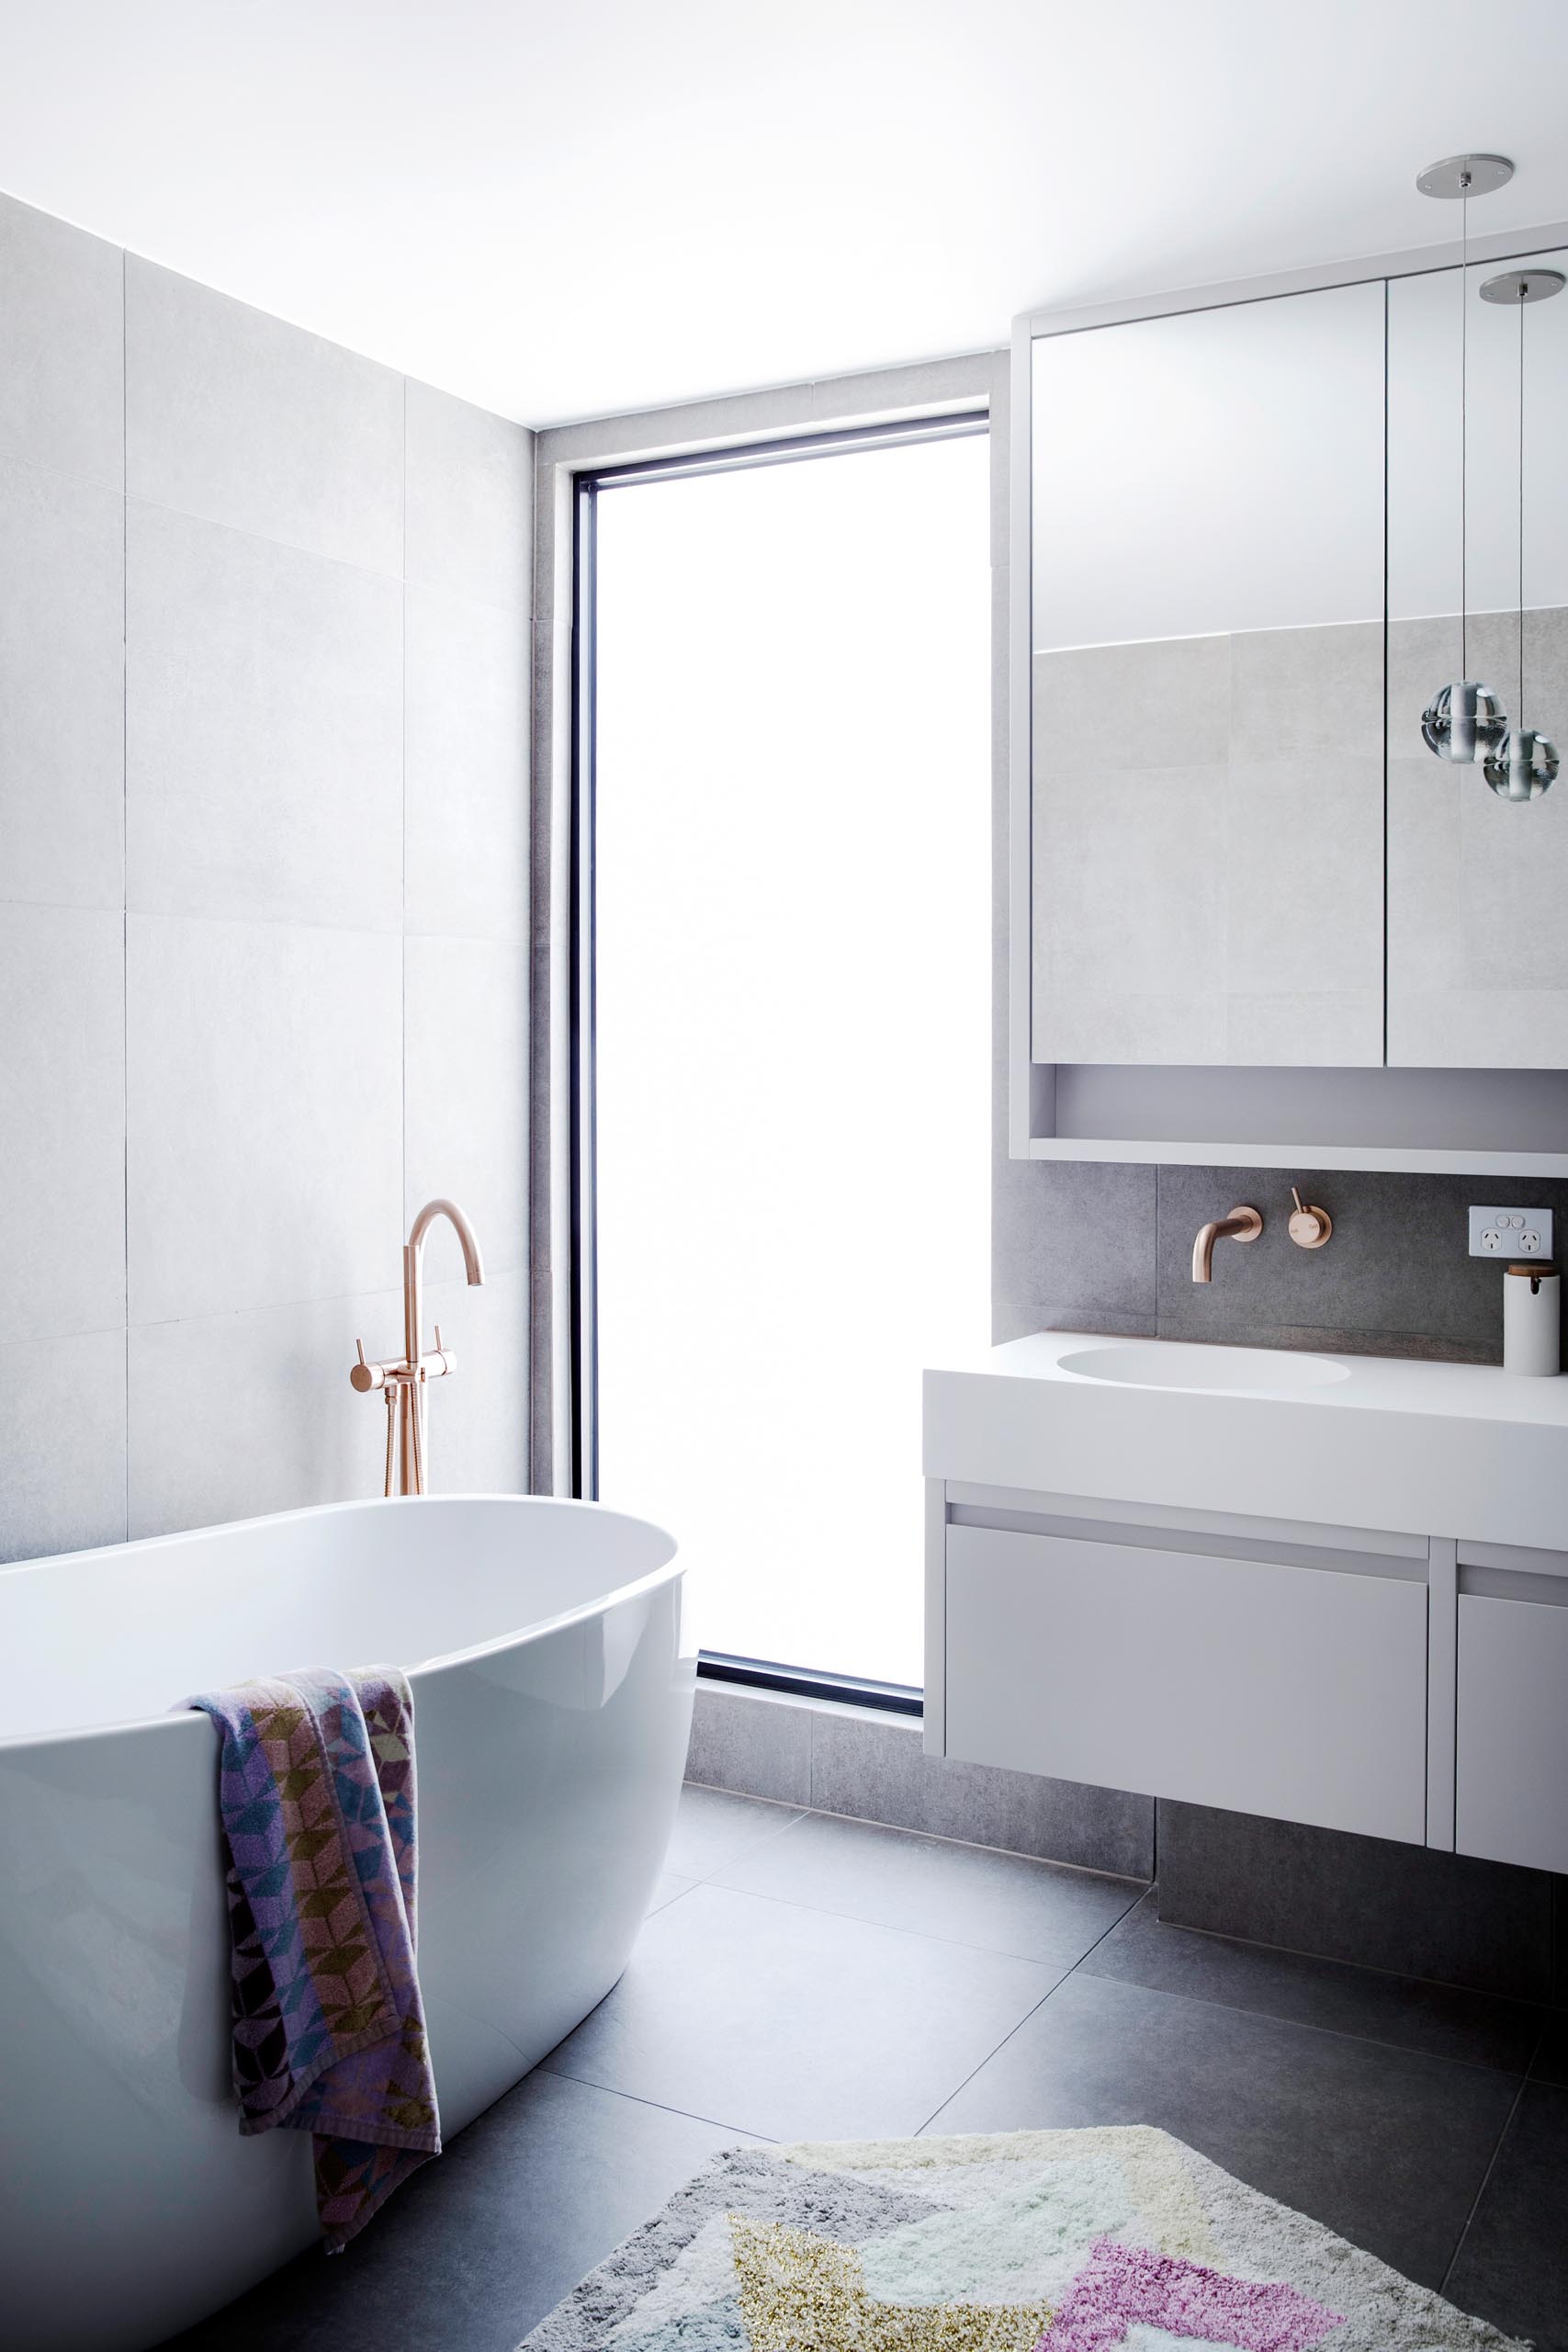 Современная ванная комната с большим вертикальным окном, через которое отдельно стоящая ванна наполняется естественным светом.